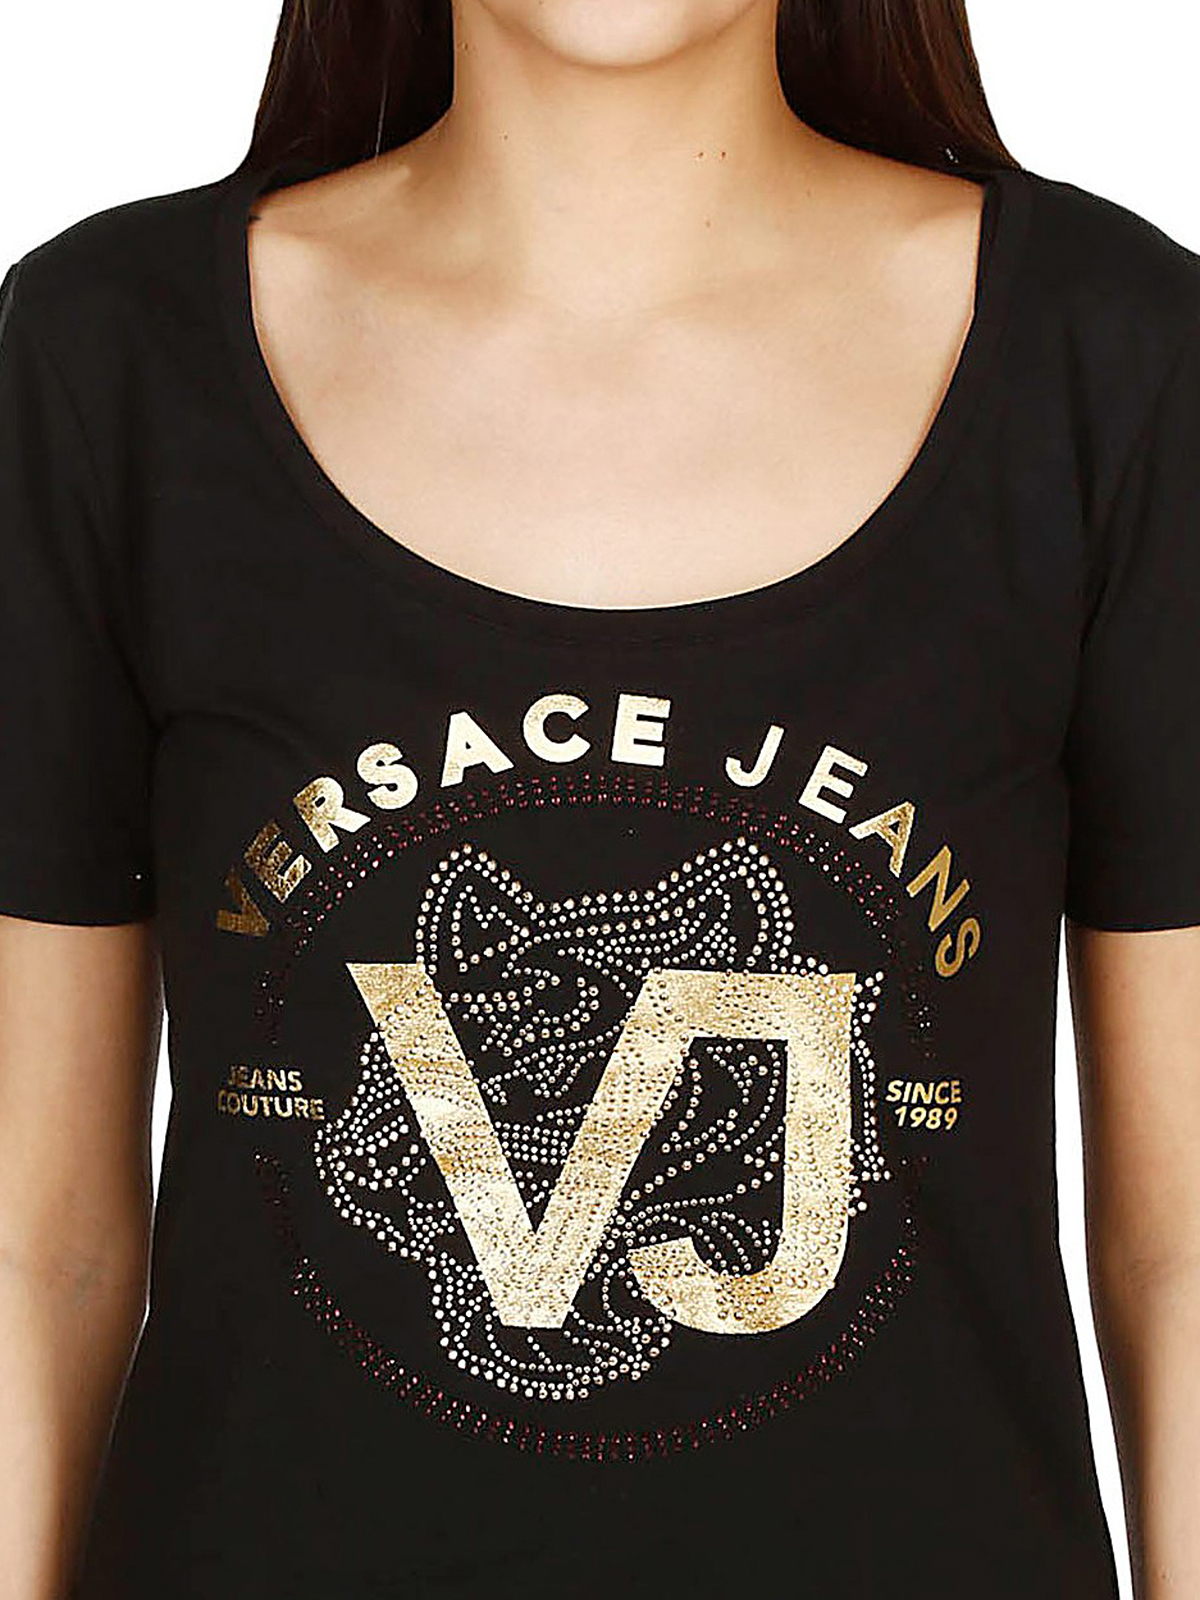 versace jeans tee shirt